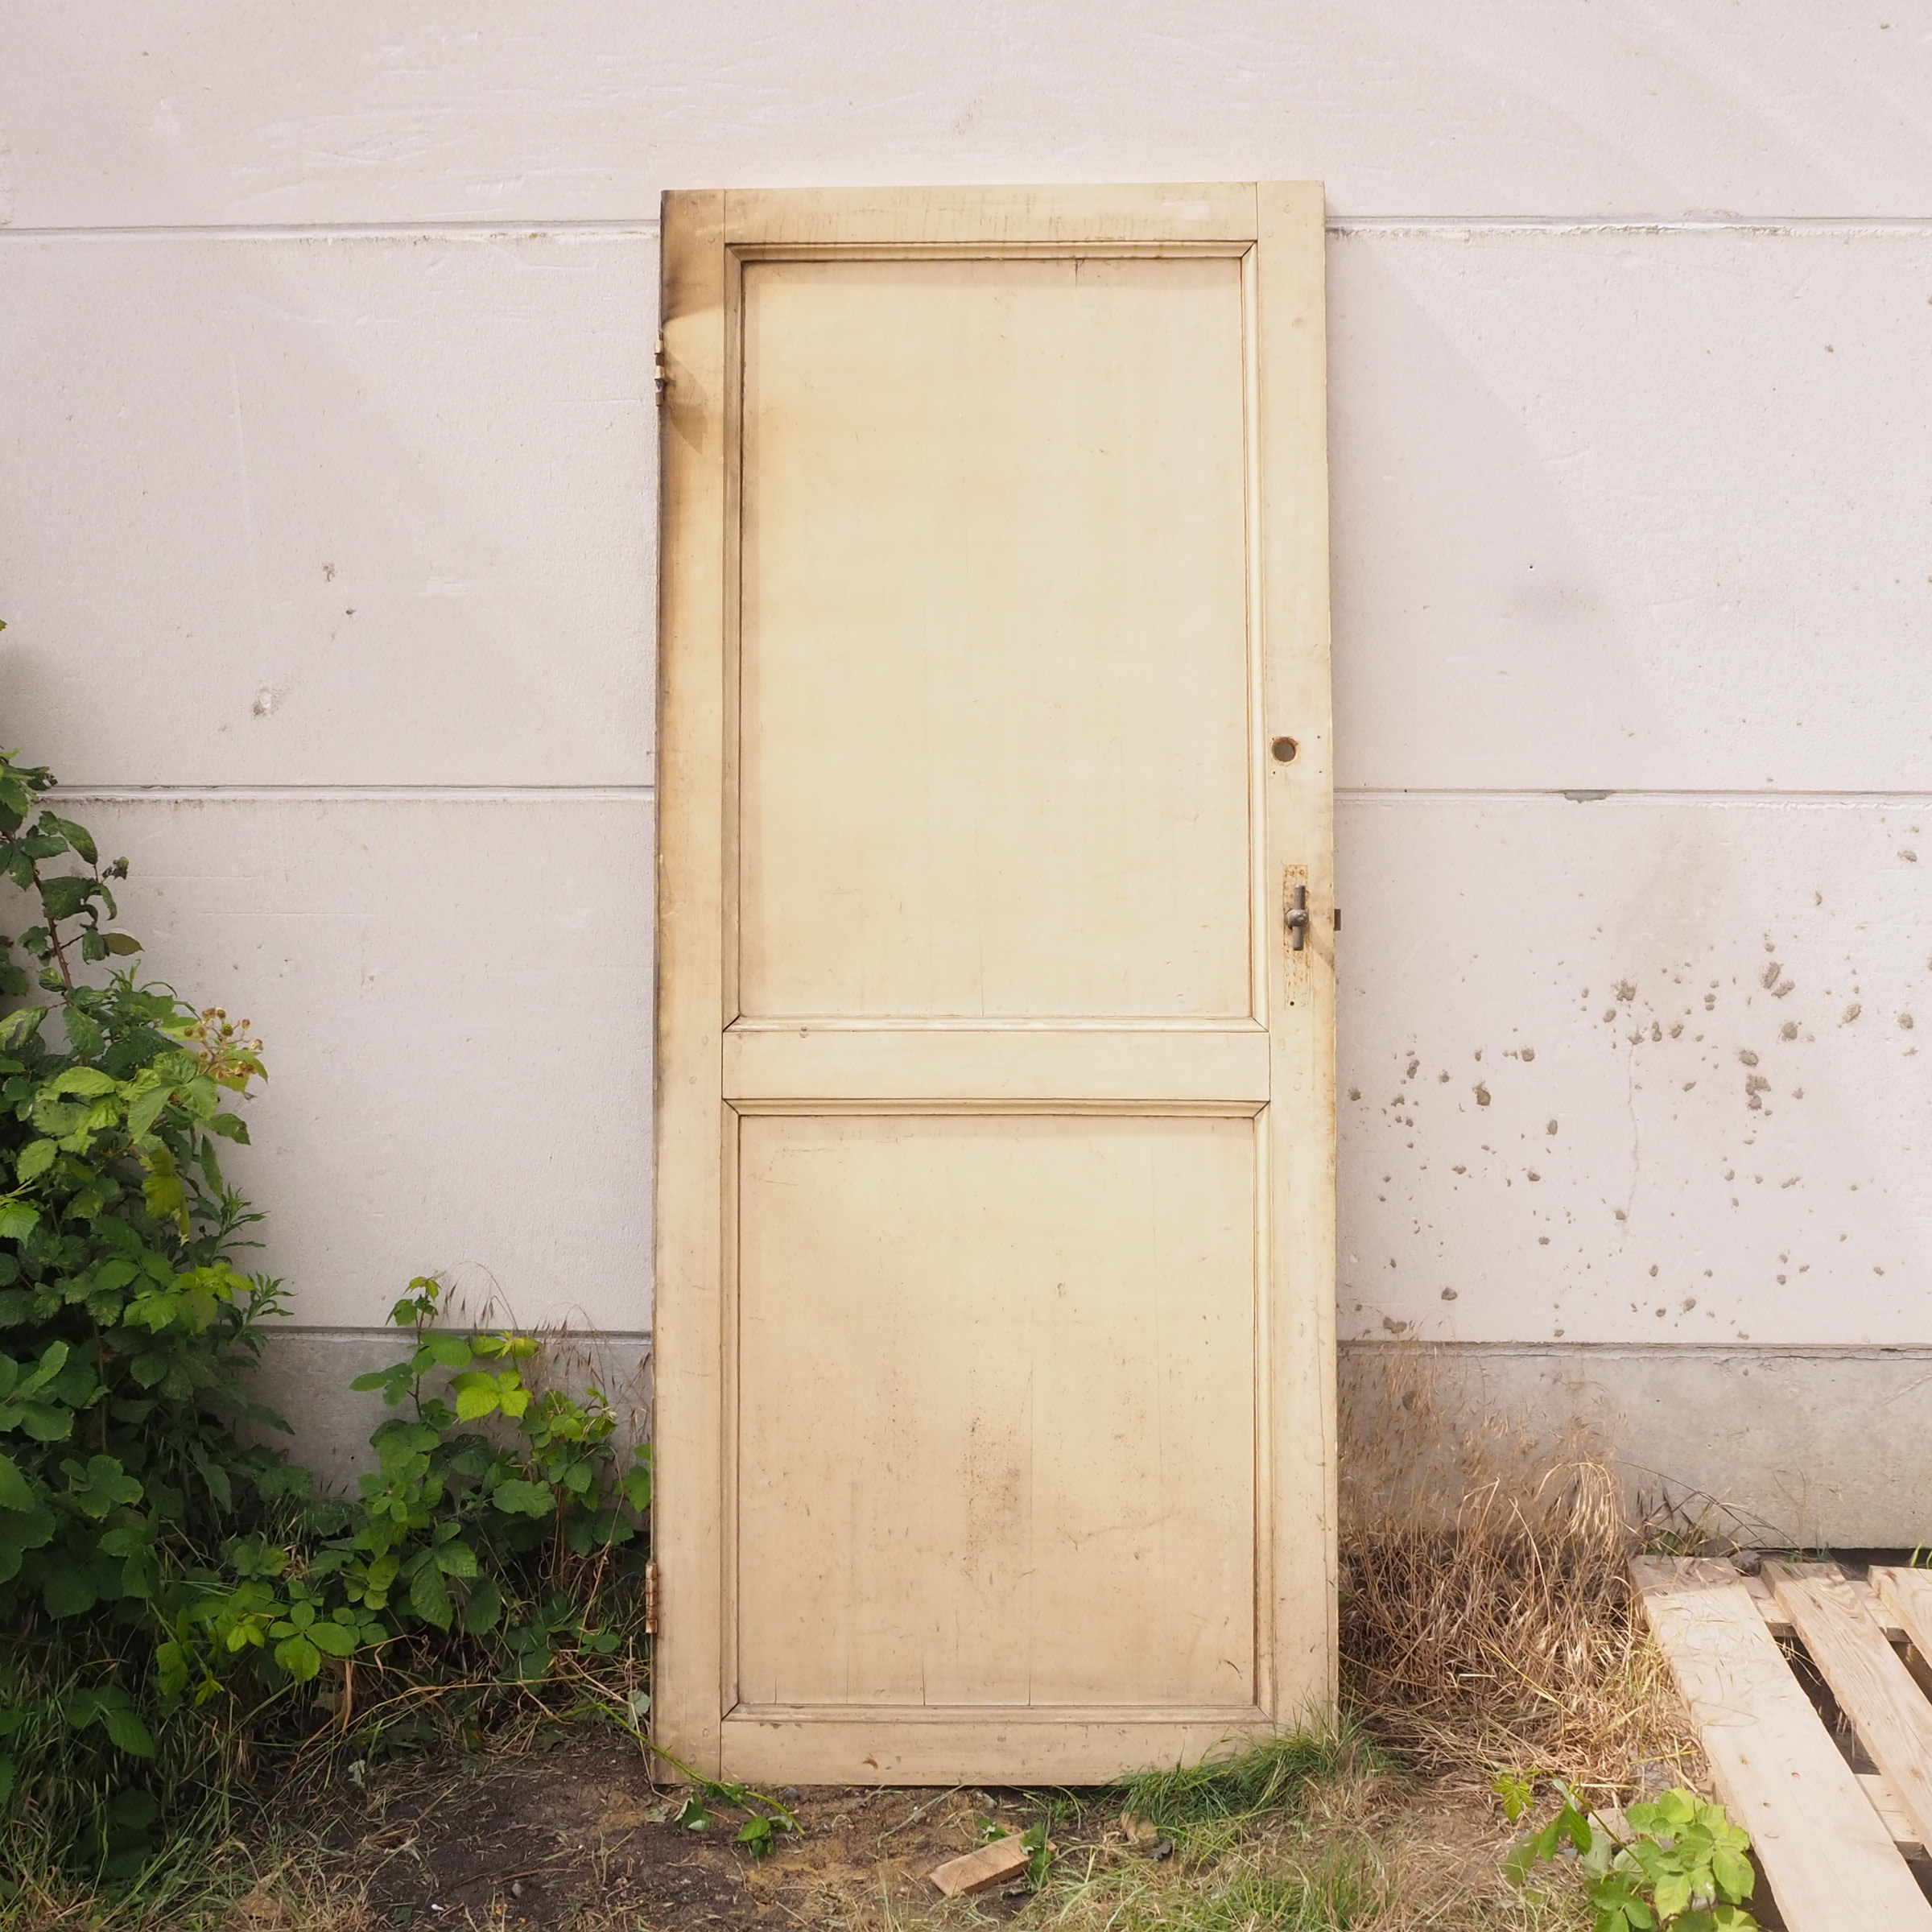 Door in painted wood